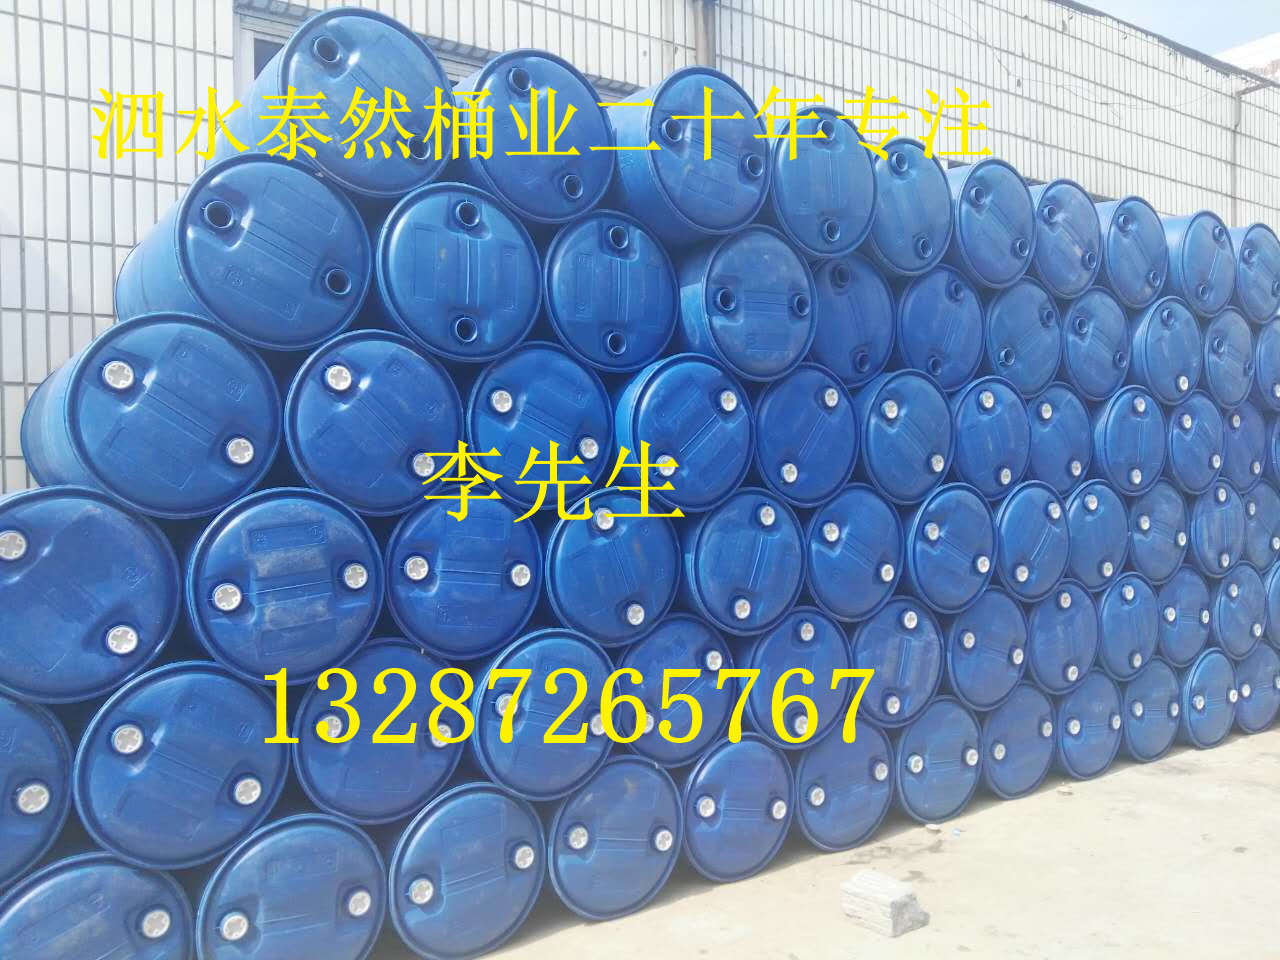 济宁市200L塑料桶 钢桶 吨桶厂家河北供应200L塑料桶 钢桶 吨桶 全新及二手桶  厂家发货不同价位